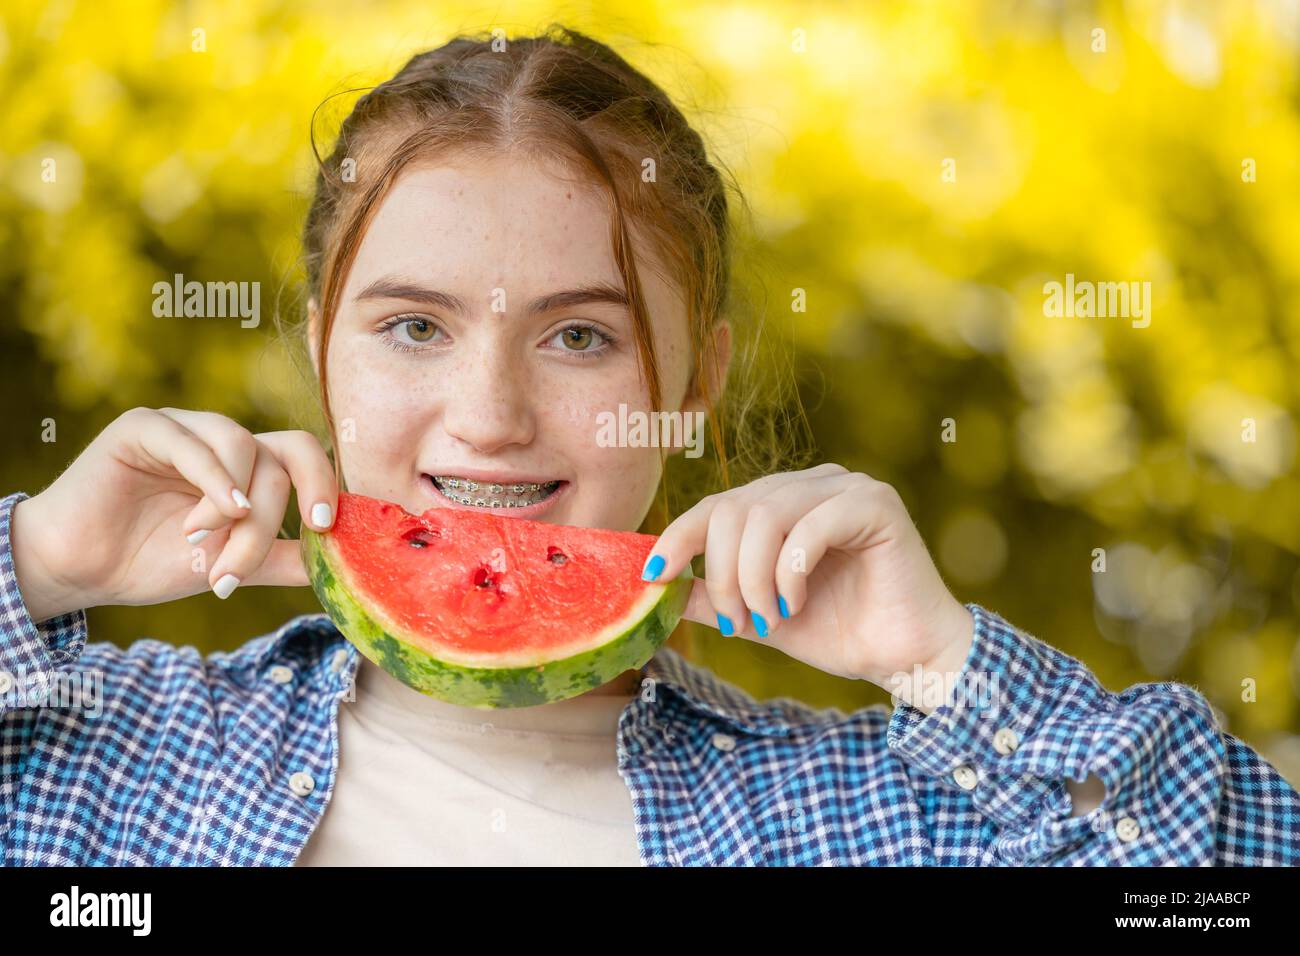 belle jeune fille souriant avec la pastèque et les soins dentaires traitement orthodontique dents s'alignant avec des bretelles ou des aligneurs Banque D'Images